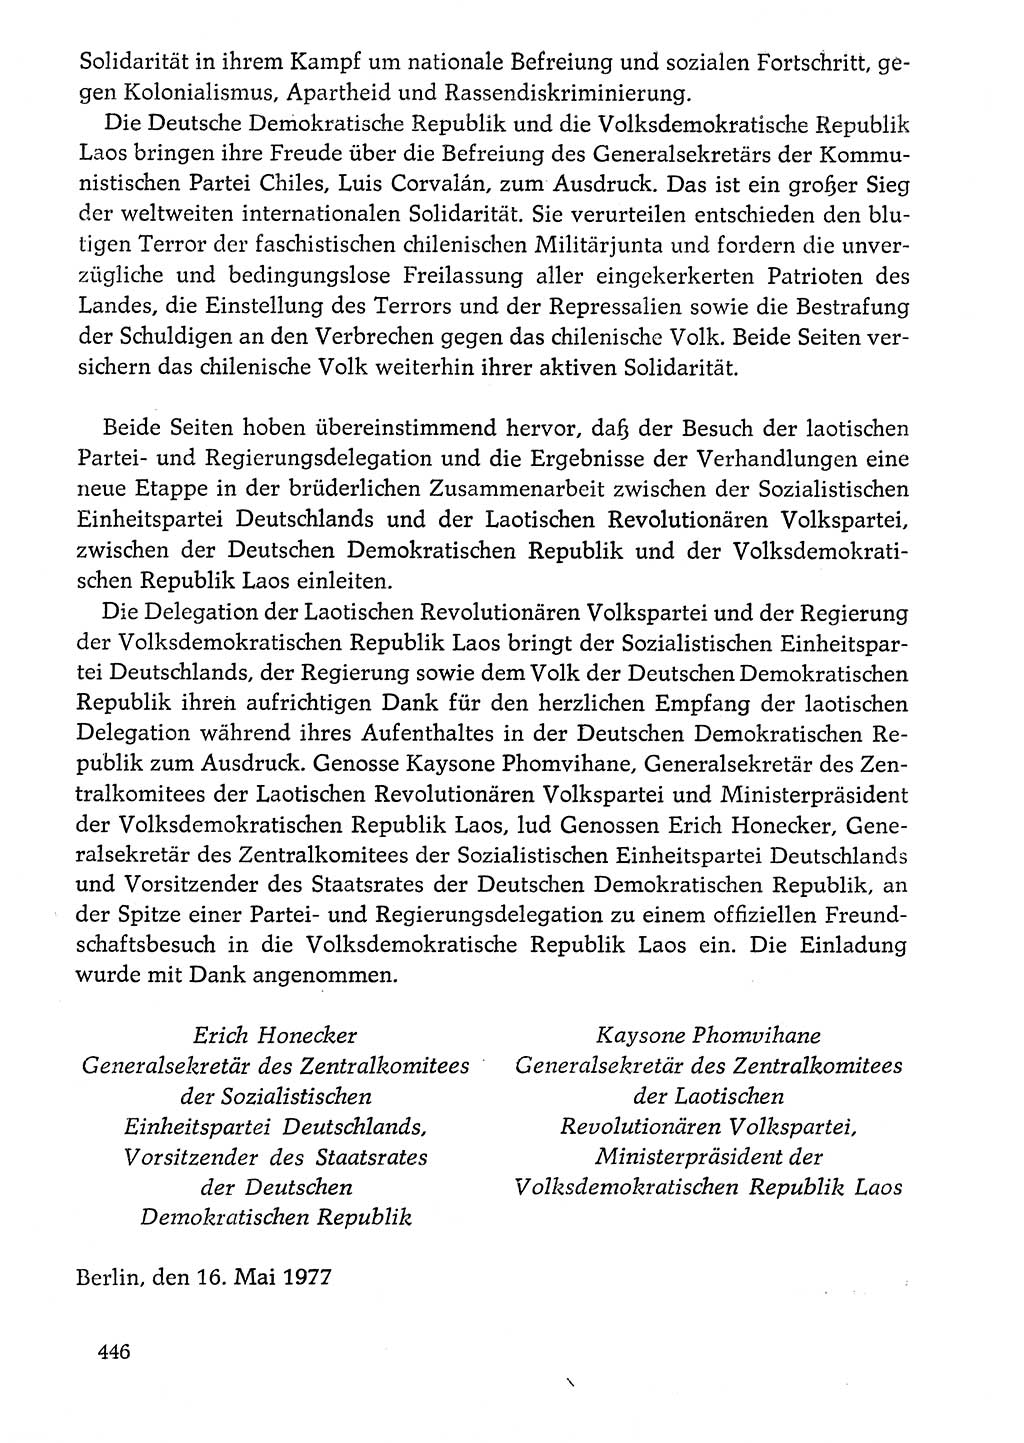 Dokumente der Sozialistischen Einheitspartei Deutschlands (SED) [Deutsche Demokratische Republik (DDR)] 1976-1977, Seite 446 (Dok. SED DDR 1976-1977, S. 446)